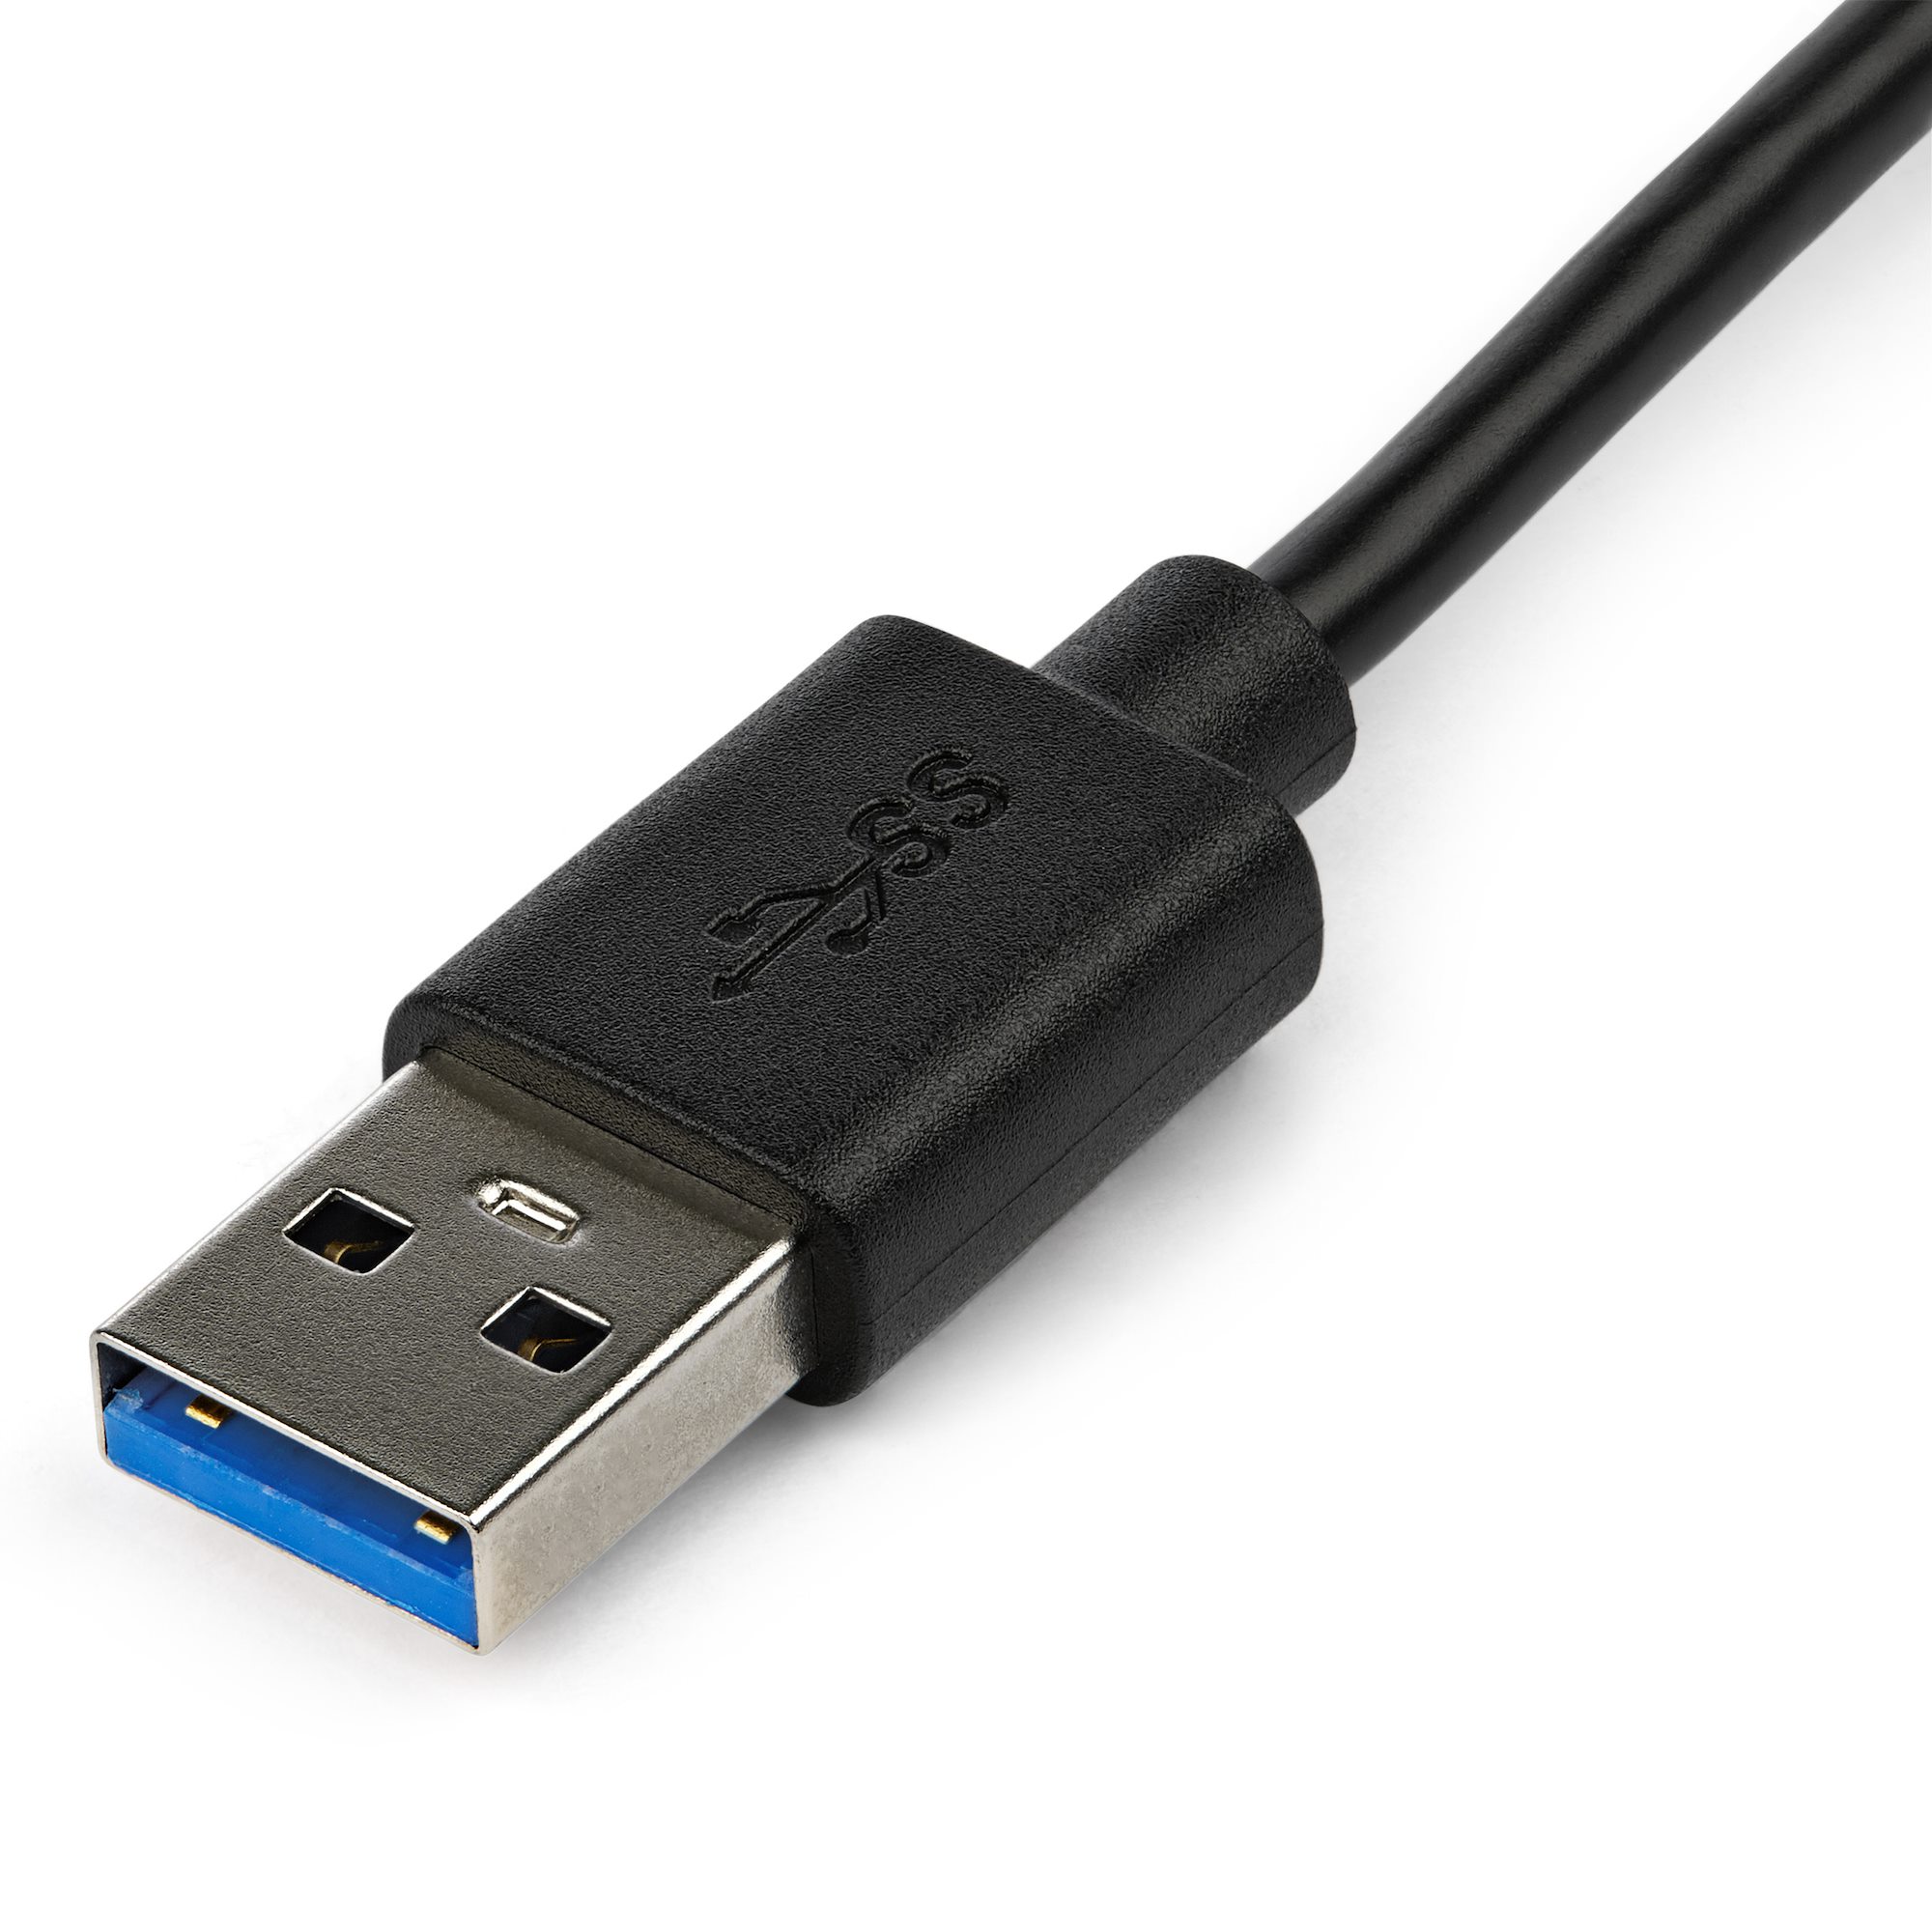 8815円 送料無料限定セール中 StarTech.com USB 3.0 - DisplayPortディスプレイ変換アダプタ 4K 30Hz 4K対応USB接続ビデオカード USB3